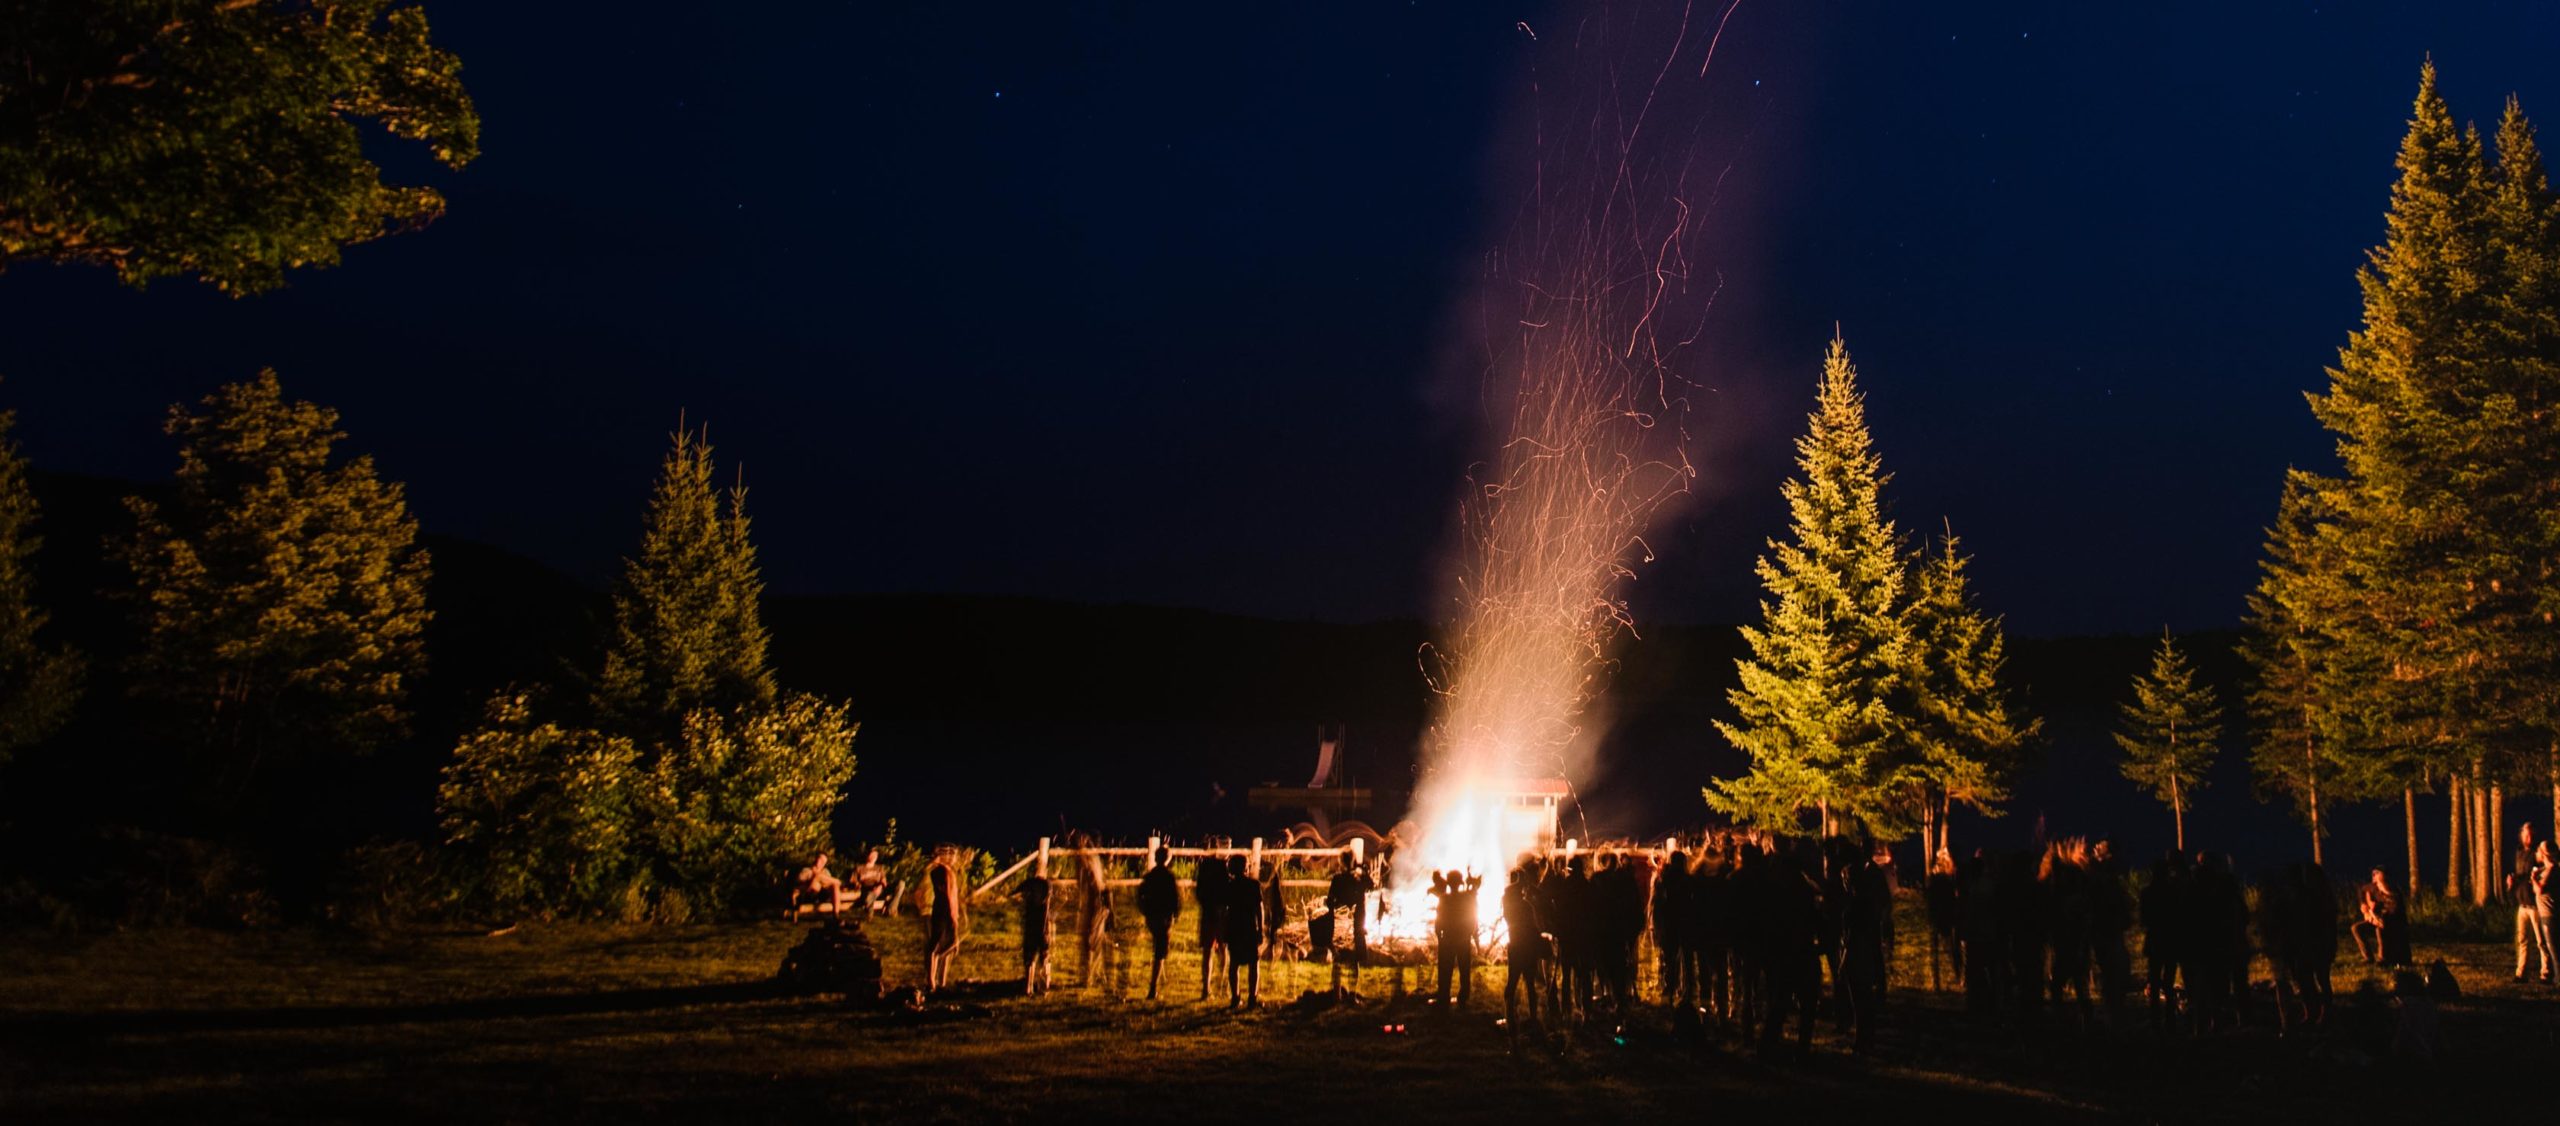 Moose River campers at a bonfire